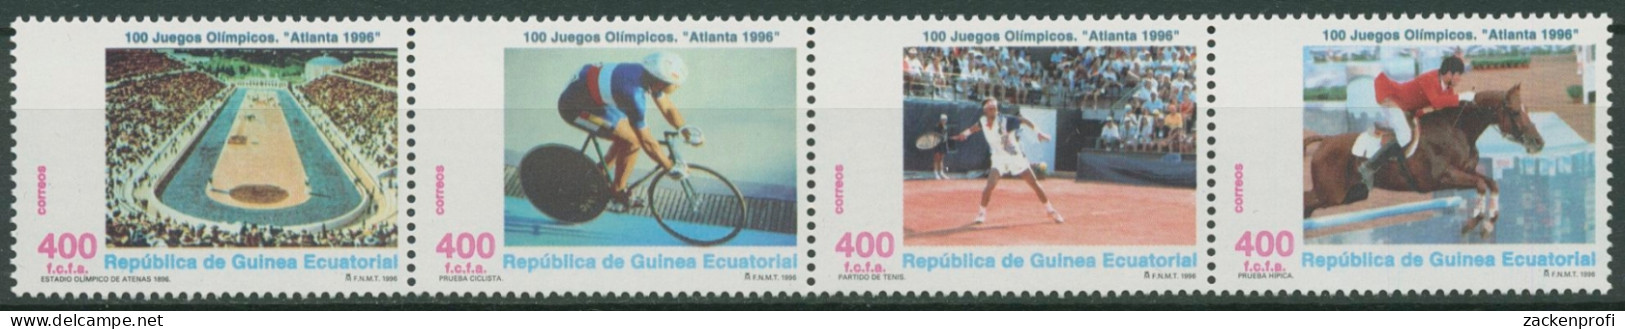 Äquatorialguinea 1996 Olymp. Spiele In Atlanta 1822/25 ZD Postfrisch (C29825) - Äquatorial-Guinea